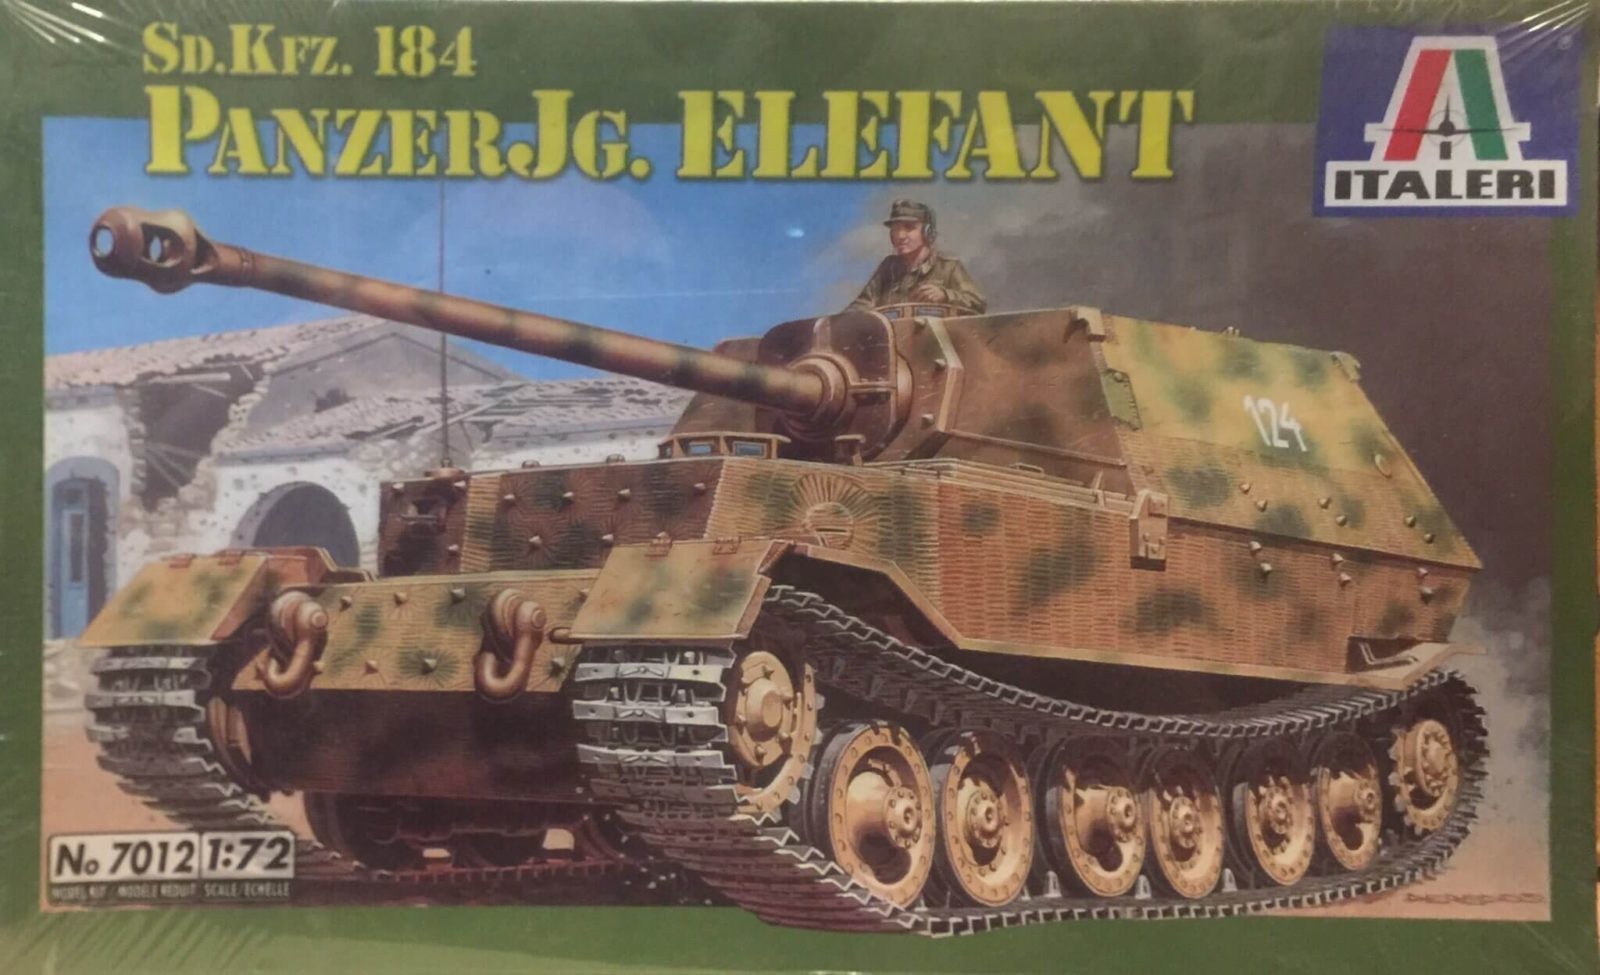 Italeri Sp.Kfz.184 PanzerJg. Elefant Ref 7012 Escala 1:72